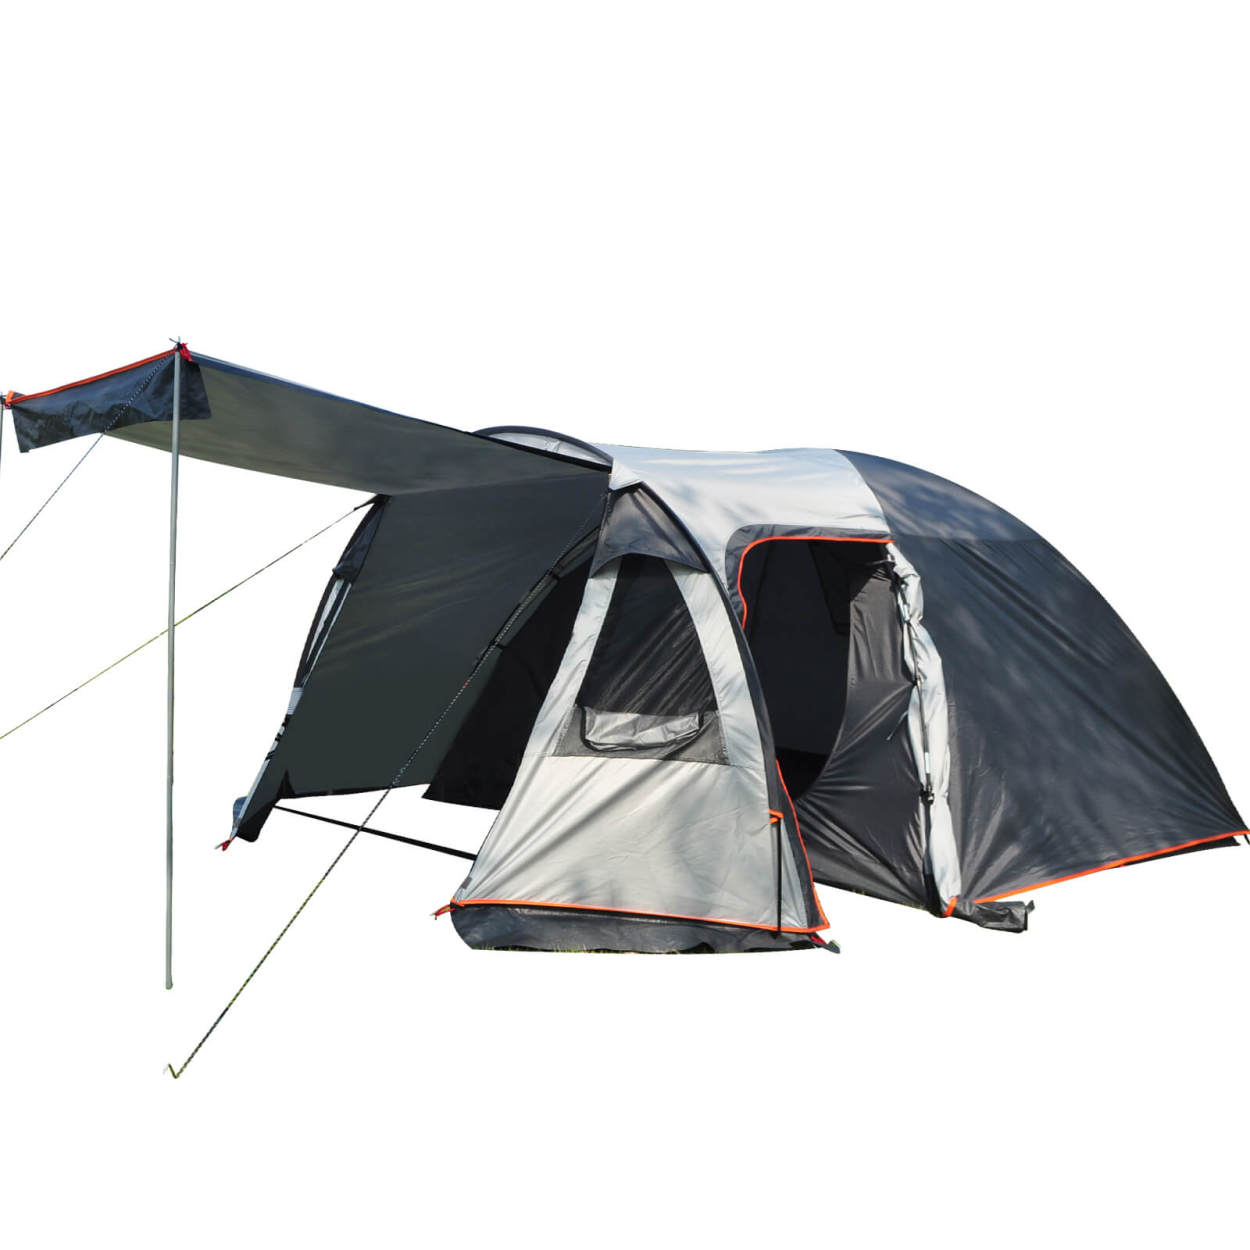 テント 2ルーム 4人用 オールインワン キャンプ 防水 キャンピング 